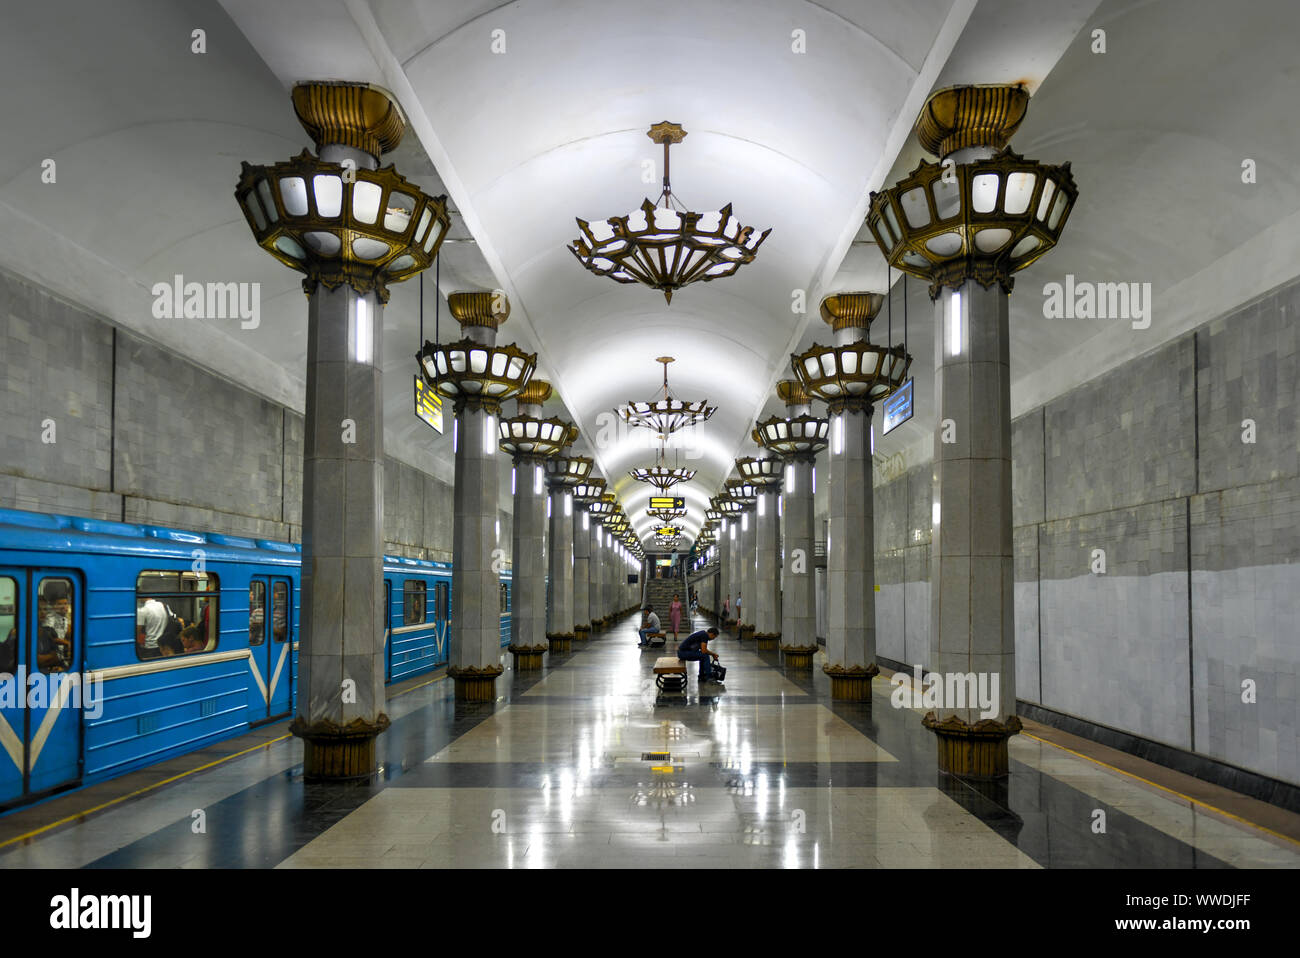 Tachkent, Ouzbékistan - Juillet 8, 2019 : Yunus Rajabiy est une station du métro de Tachkent sur ligne Yunusobod qui a été inaugurée le 26 octobre 2001. Banque D'Images